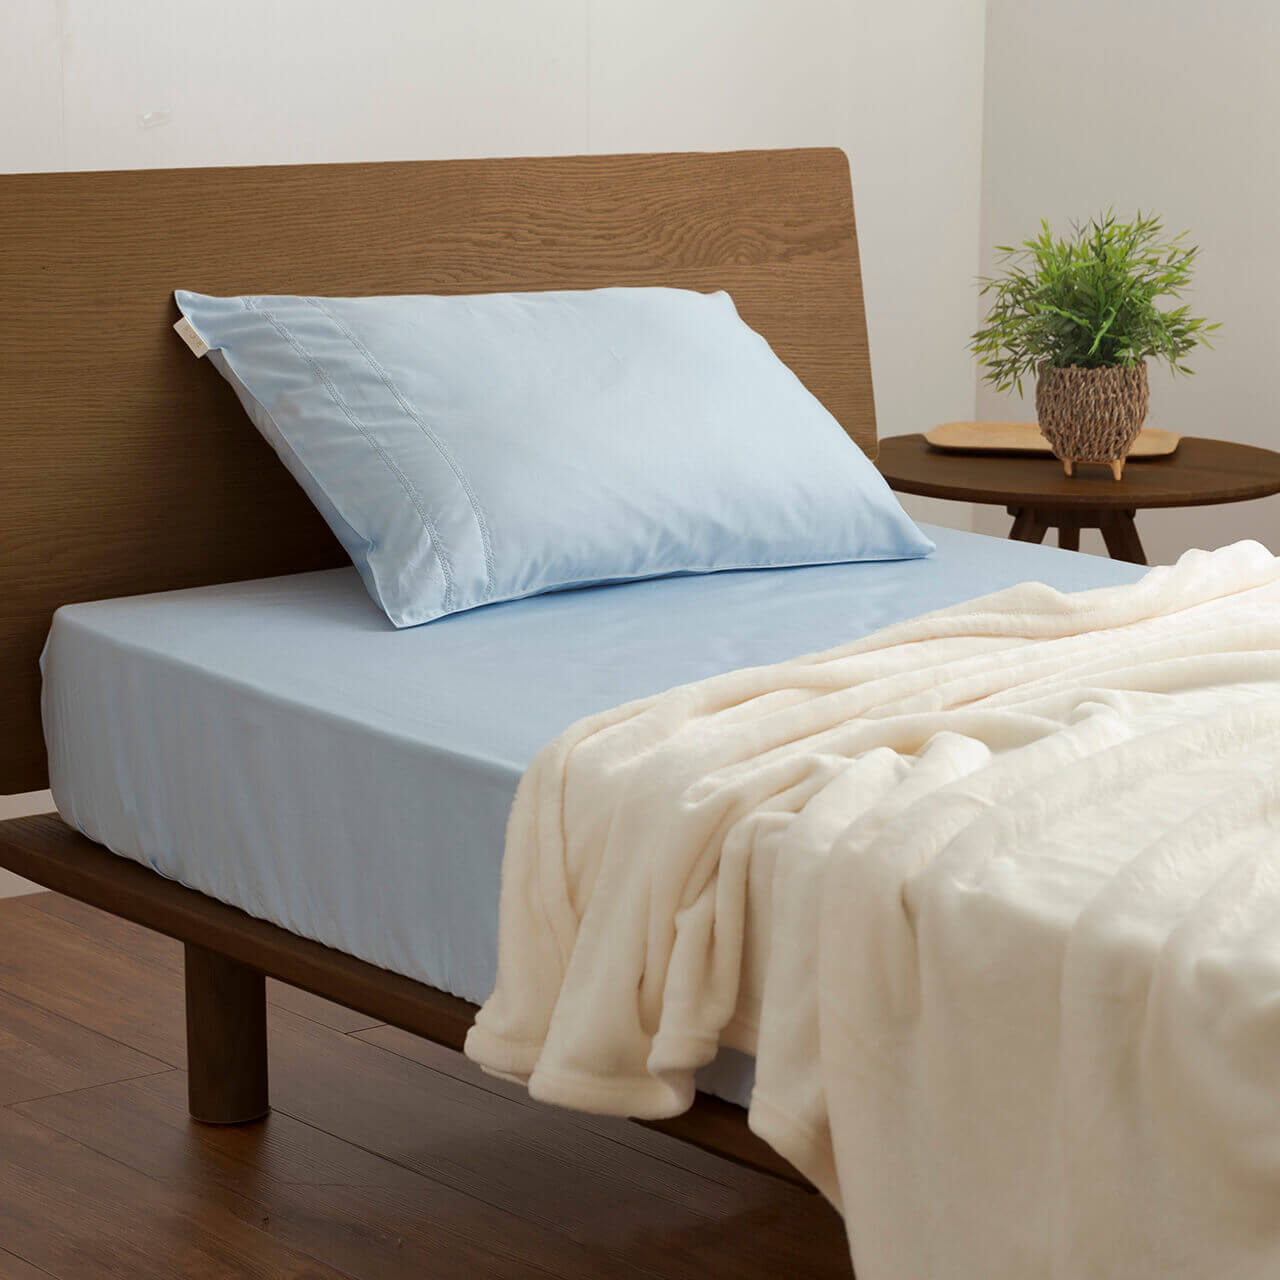 クイーンサイズ ベッド用寝具 – シーツjp